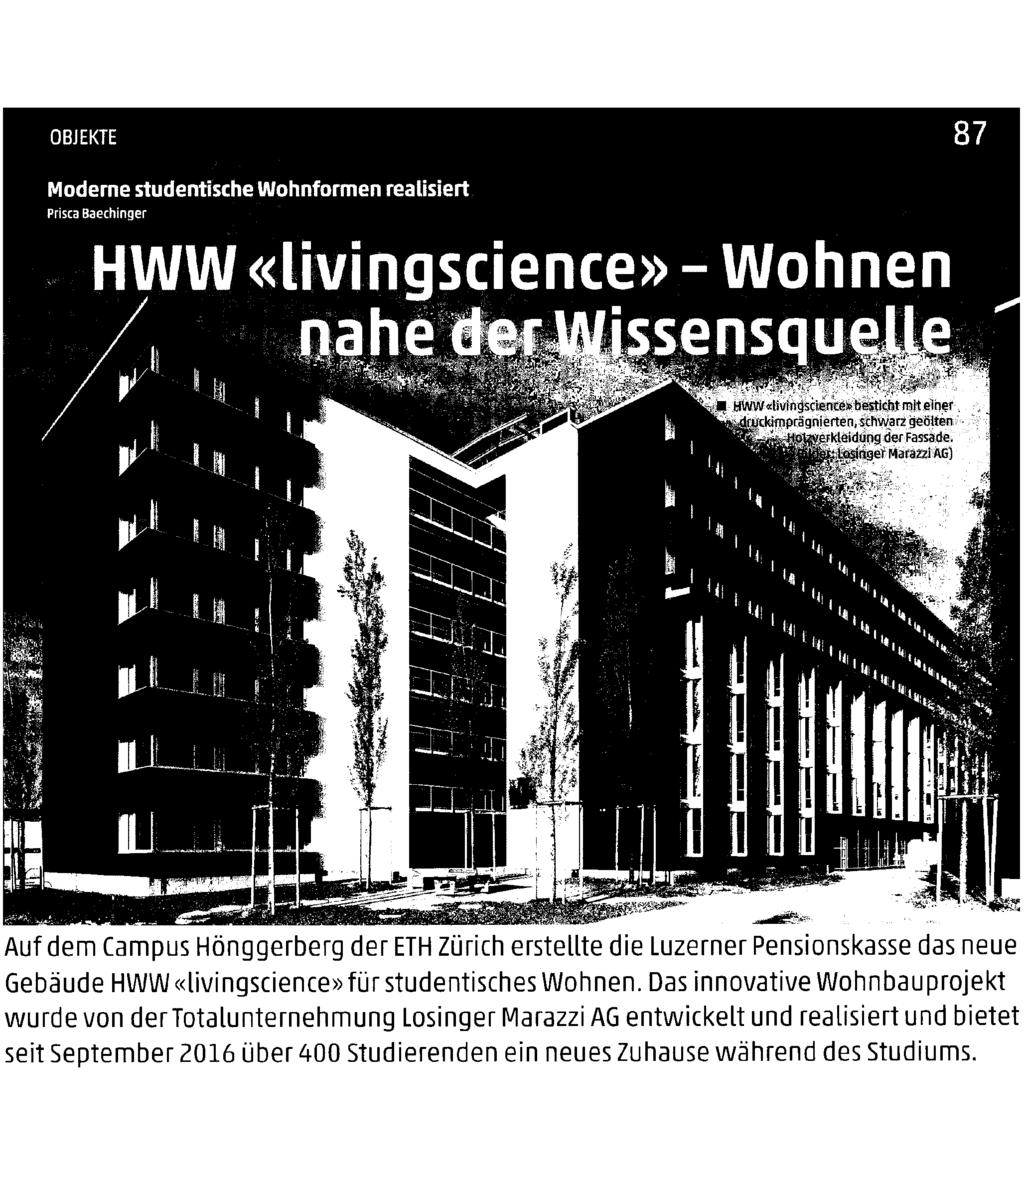 OBJEKTE 1 Moderne studentische Wohnformen realisiert Prisca Baechinger HWW «livingscience» - Wohnen 1 1 nahe der Wissensquelle Hvgw«iivingscience» besticht mit